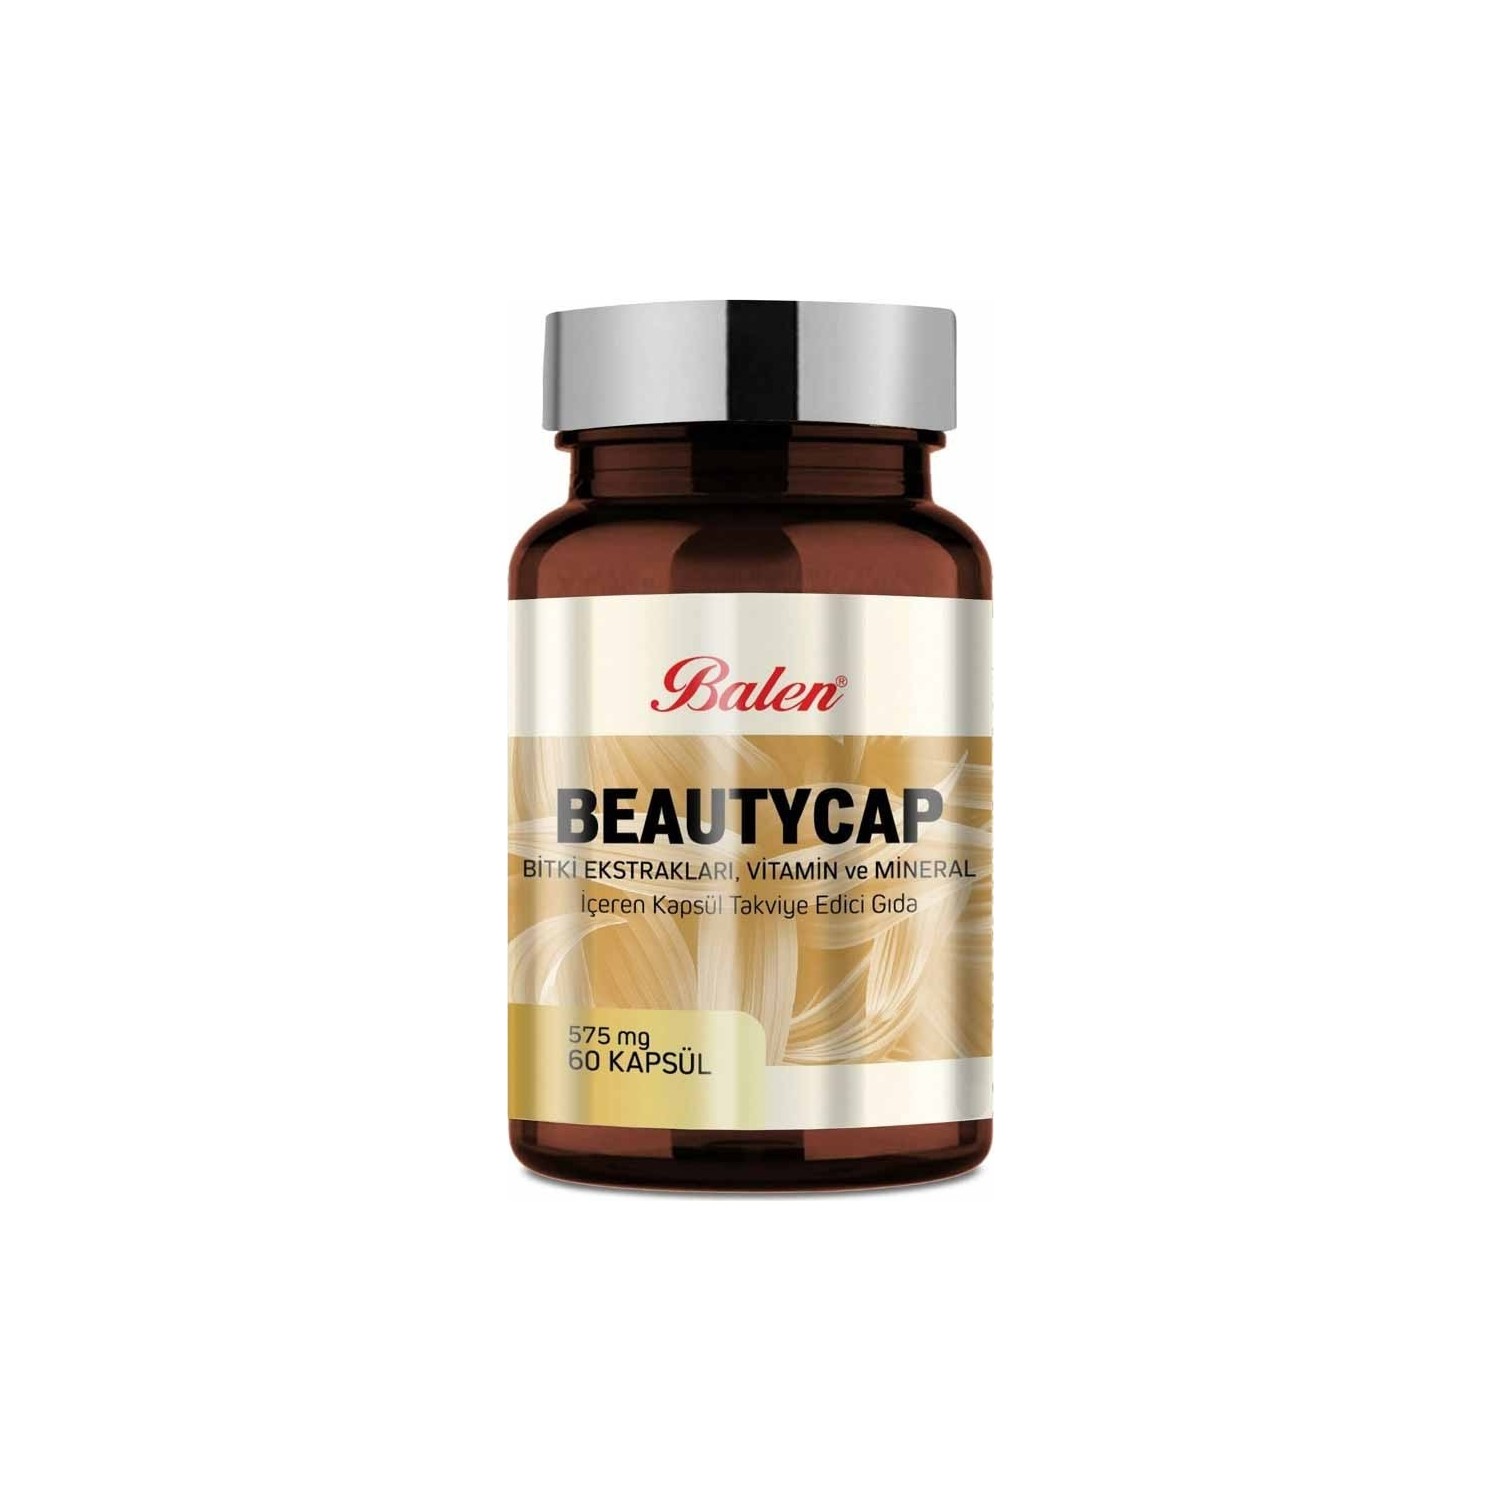 Пищевая добавка Balen Beautycap 575 мг, 3 упаковки по 60 капсул